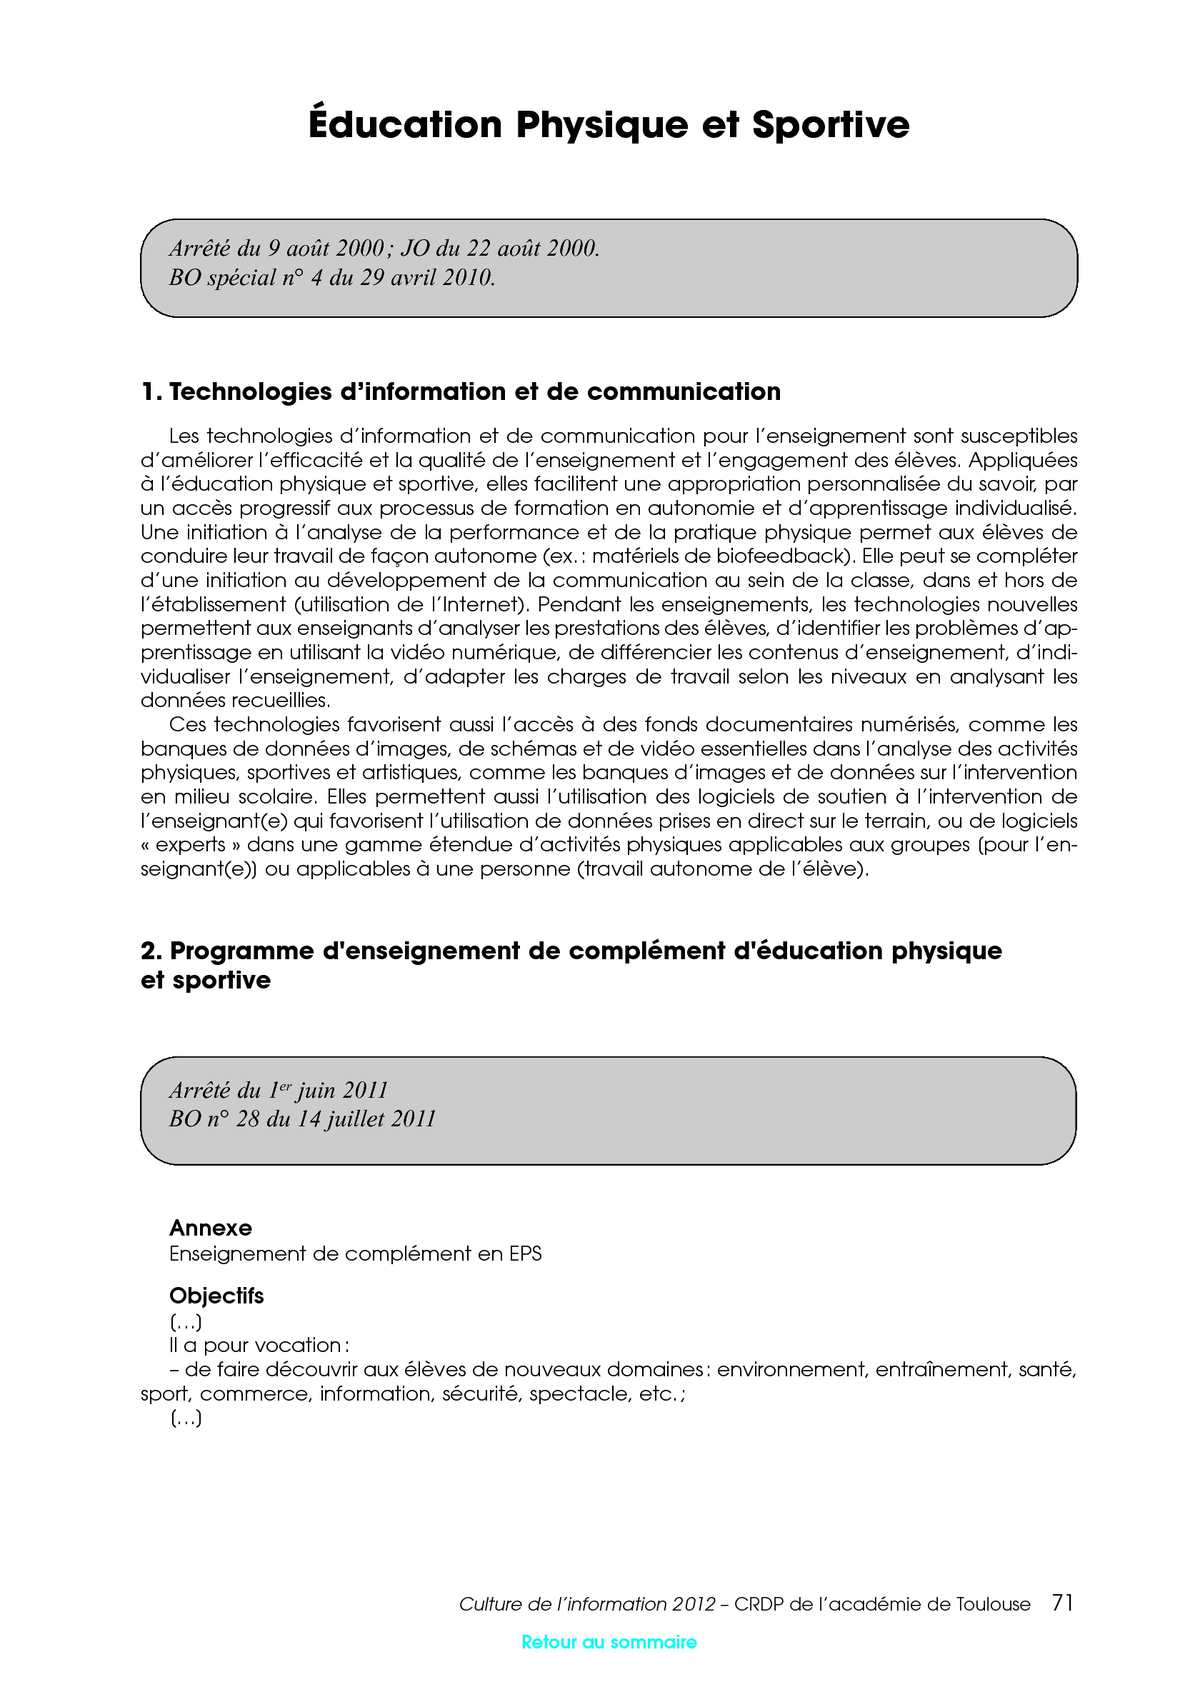 Culture De L'rmation Et Disciplines D'enseignement pour Bo Programmes 2012